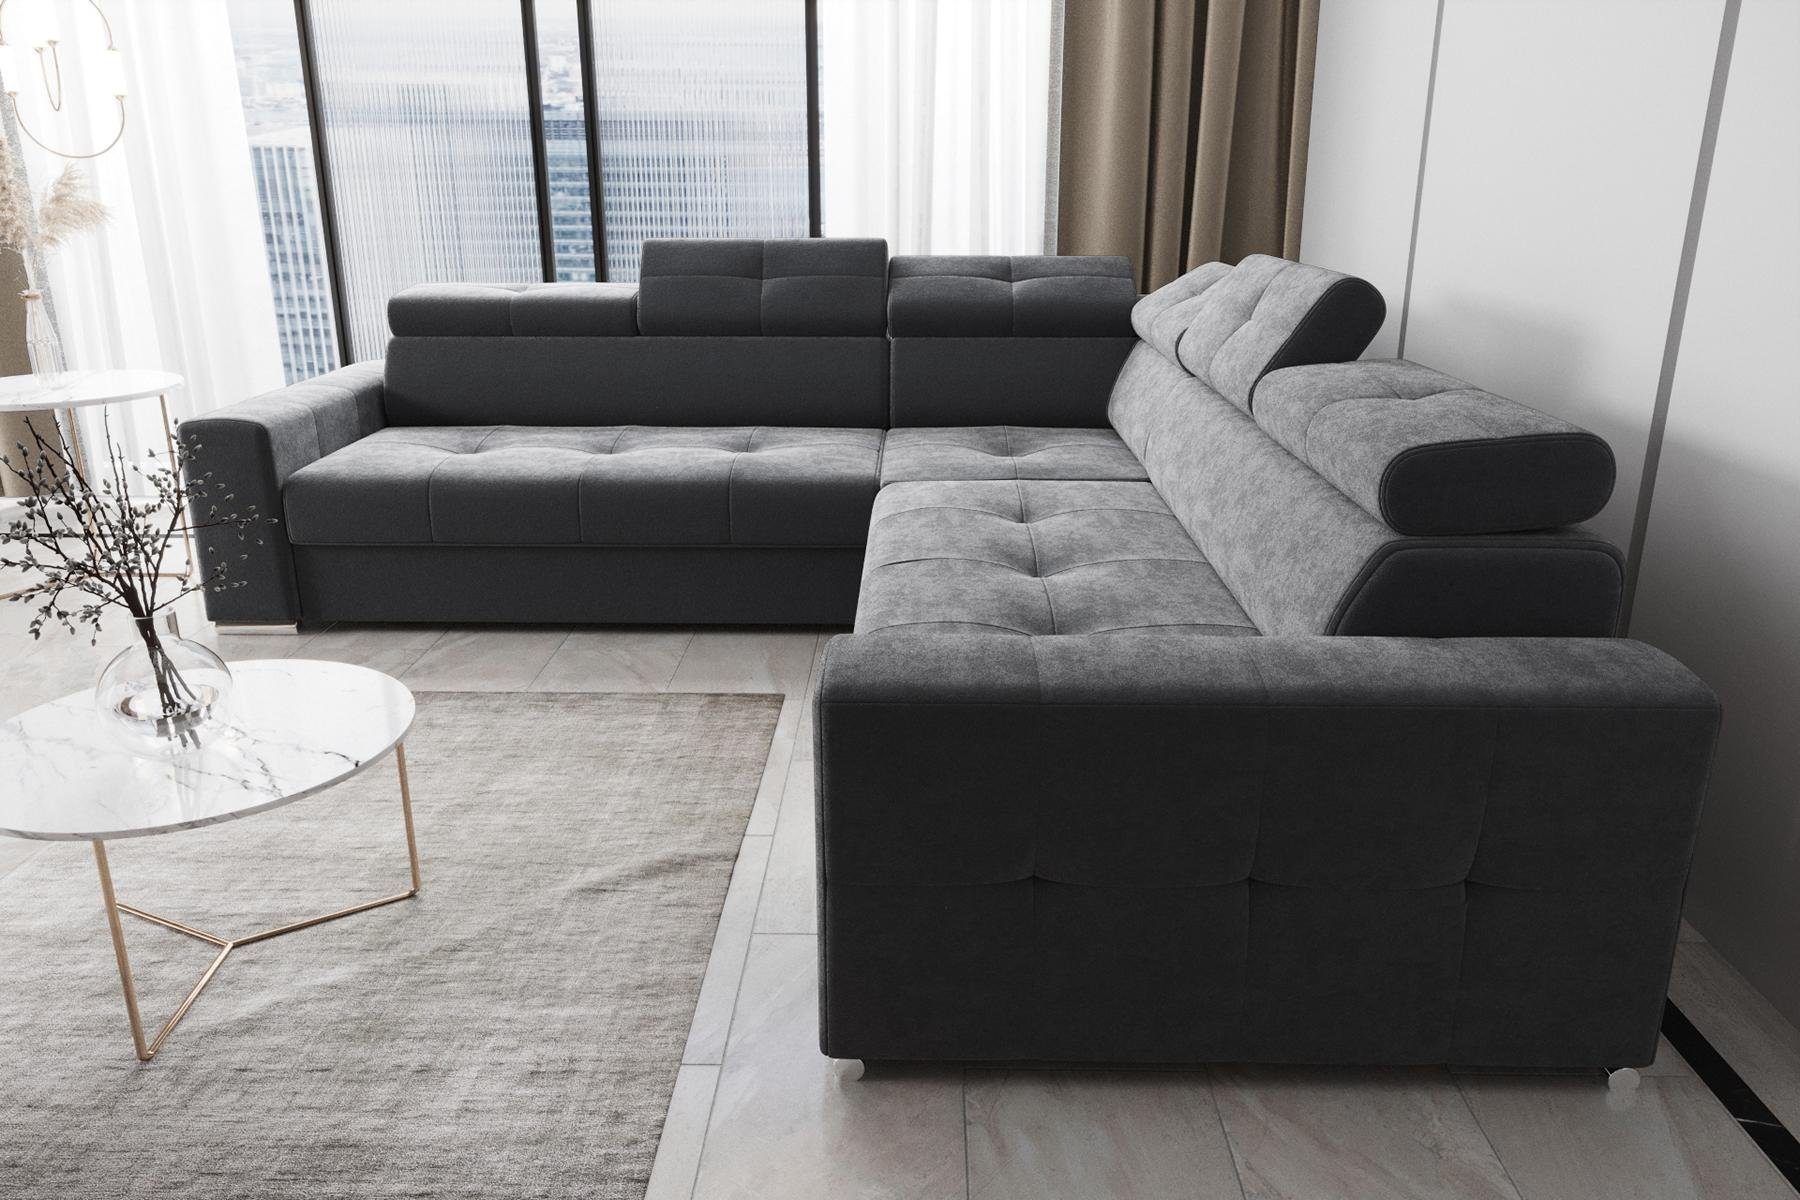 JVmoebel Ecksofa Wohnzimmer Textil Leder Europe in Couch, Made Form Grau Modern Luxus L Ecksofa